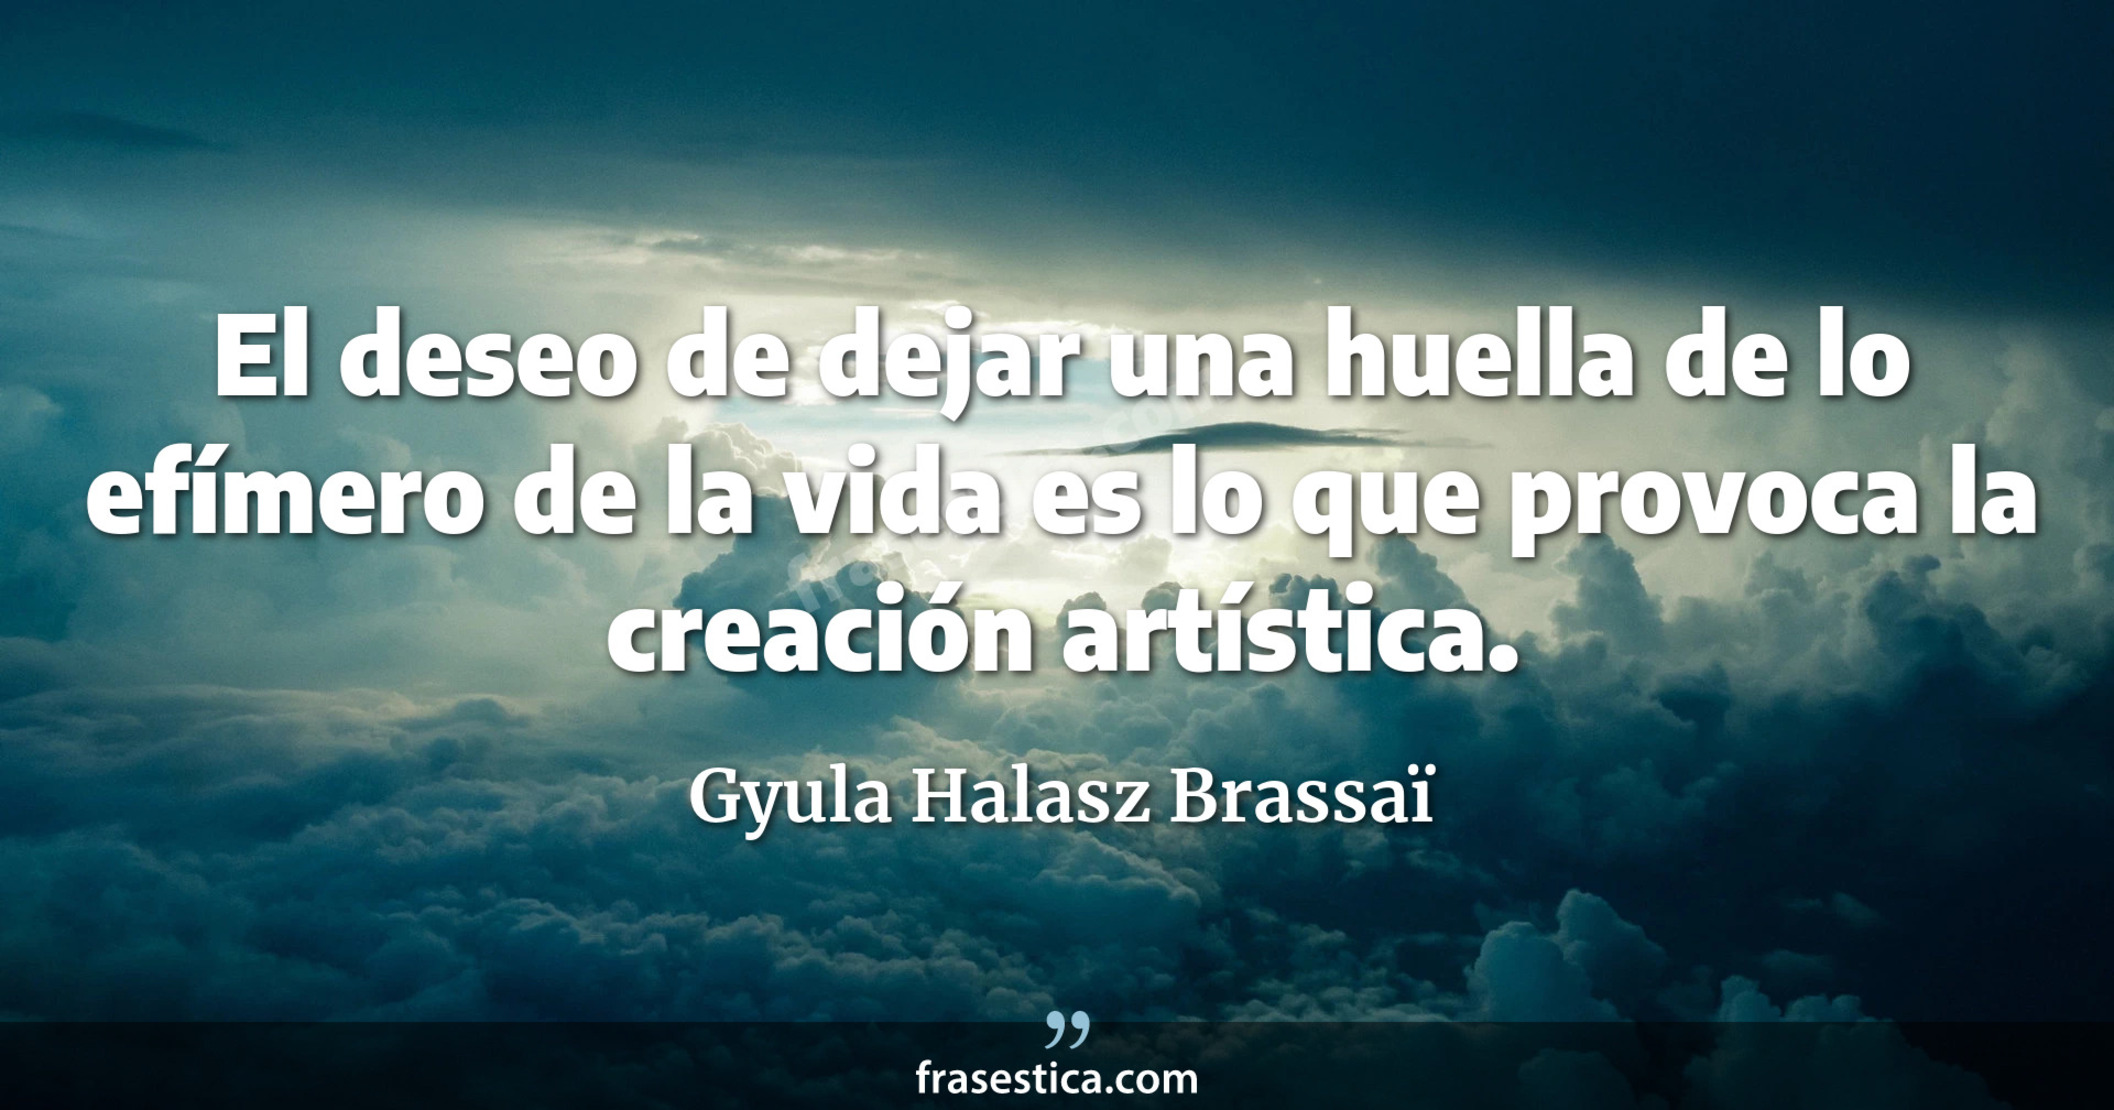 El deseo de dejar una huella de lo efímero de la vida es lo que provoca la creación artística. - Gyula Halasz Brassaï